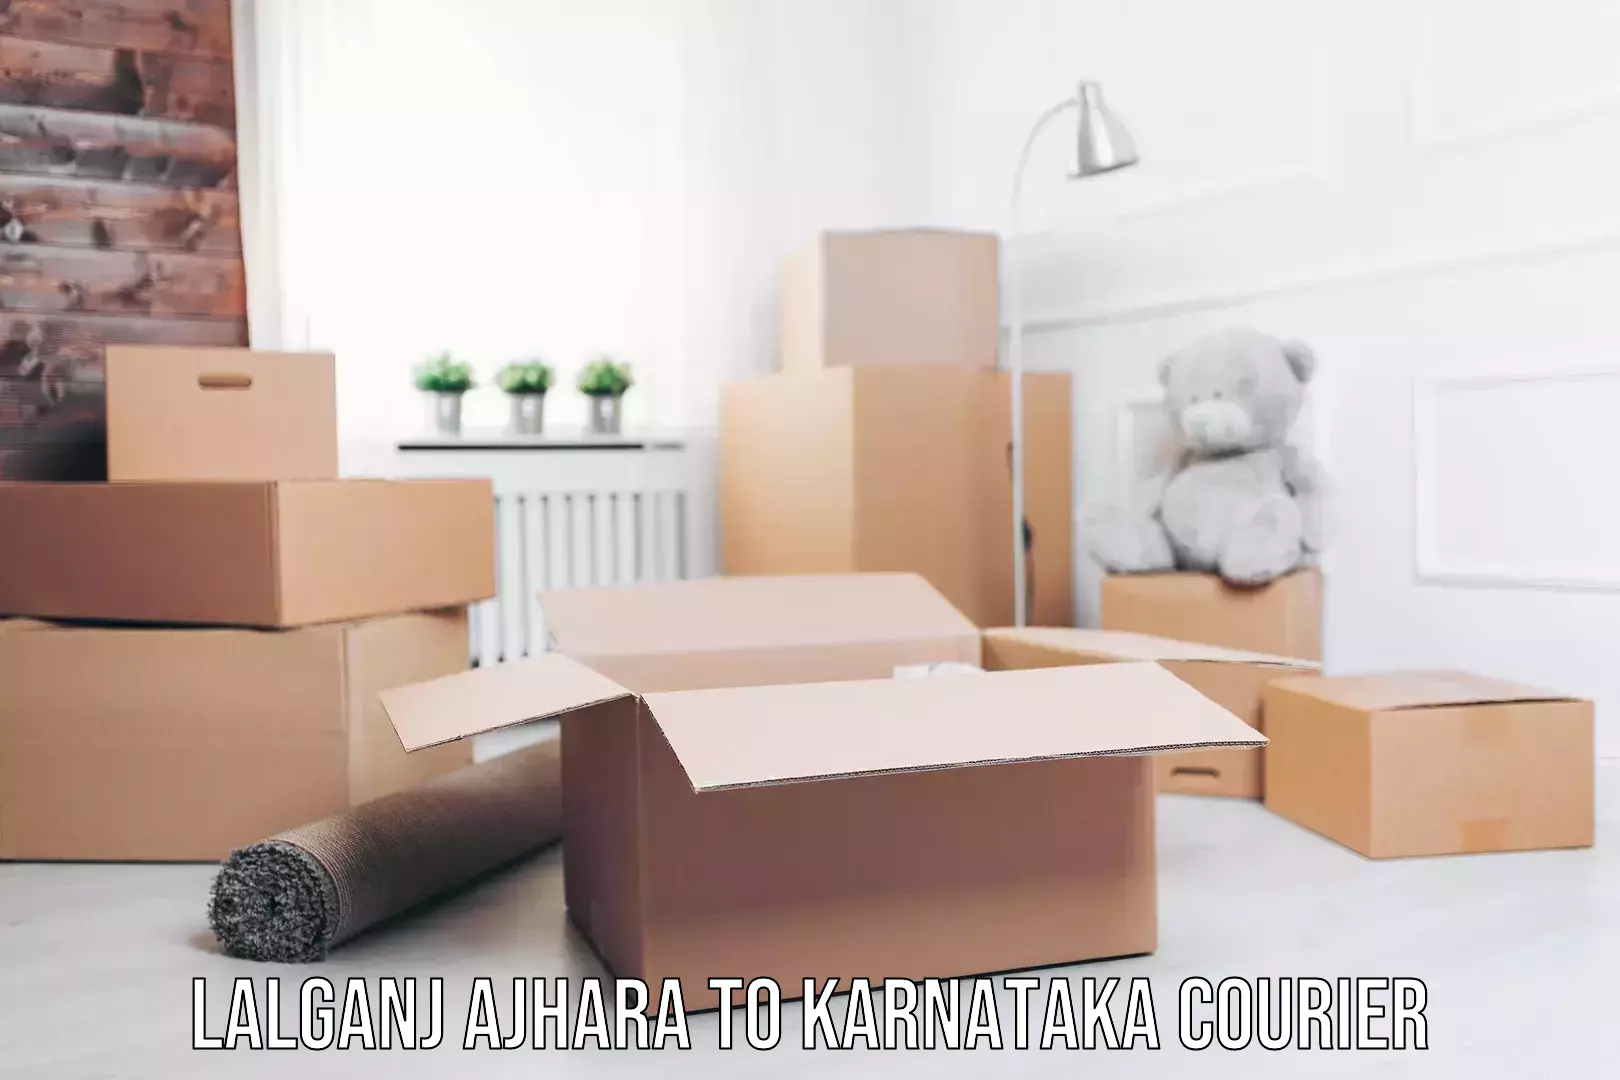 Professional furniture moving in Lalganj Ajhara to Karnataka